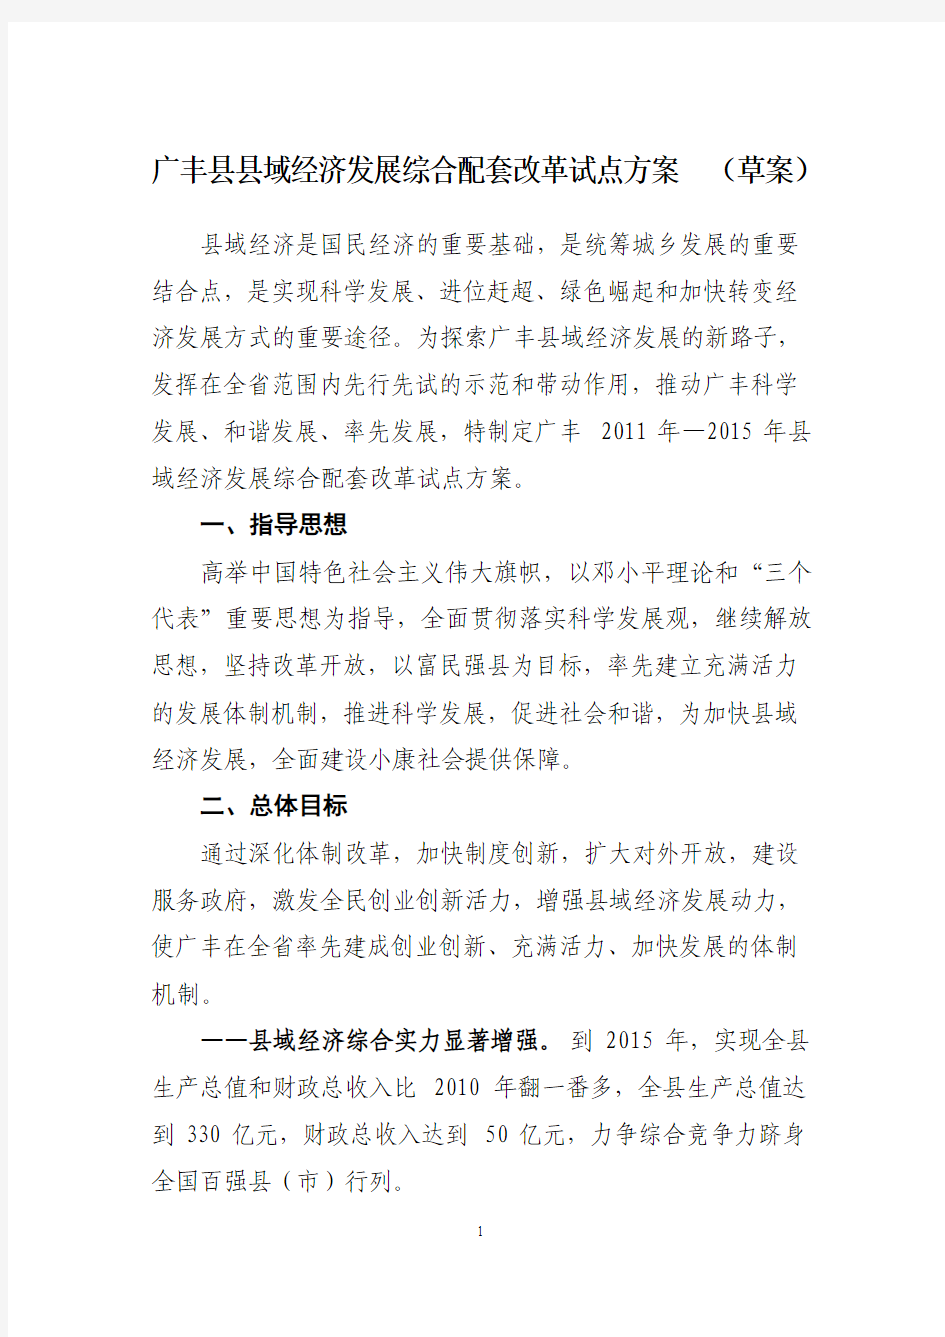 广丰县域经济发展综合配套改革试点方案(草案)